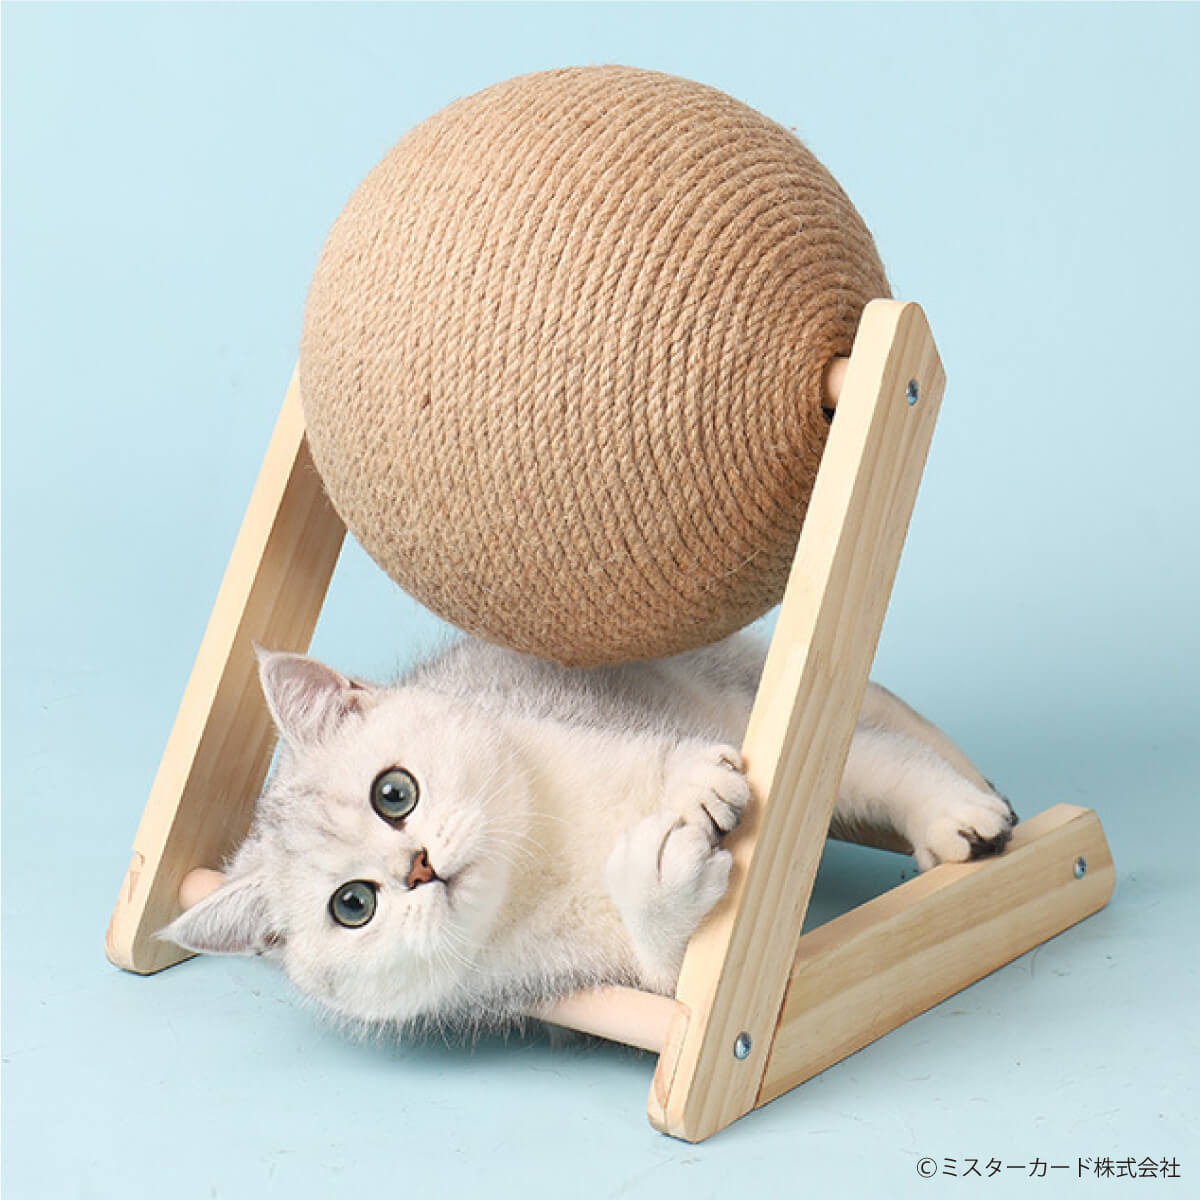 猫しか勝たんで放送！ 回転式 猫用 爪研ぎ バリたま 交換用ボール付属 猫 ネコ 爪とぎ ボール型 麻ひも 運動不足 ストレス ペット用品  MR-PETCT09 :MR-PETCT09:オールバイ - 通販 - Yahoo!ショッピング